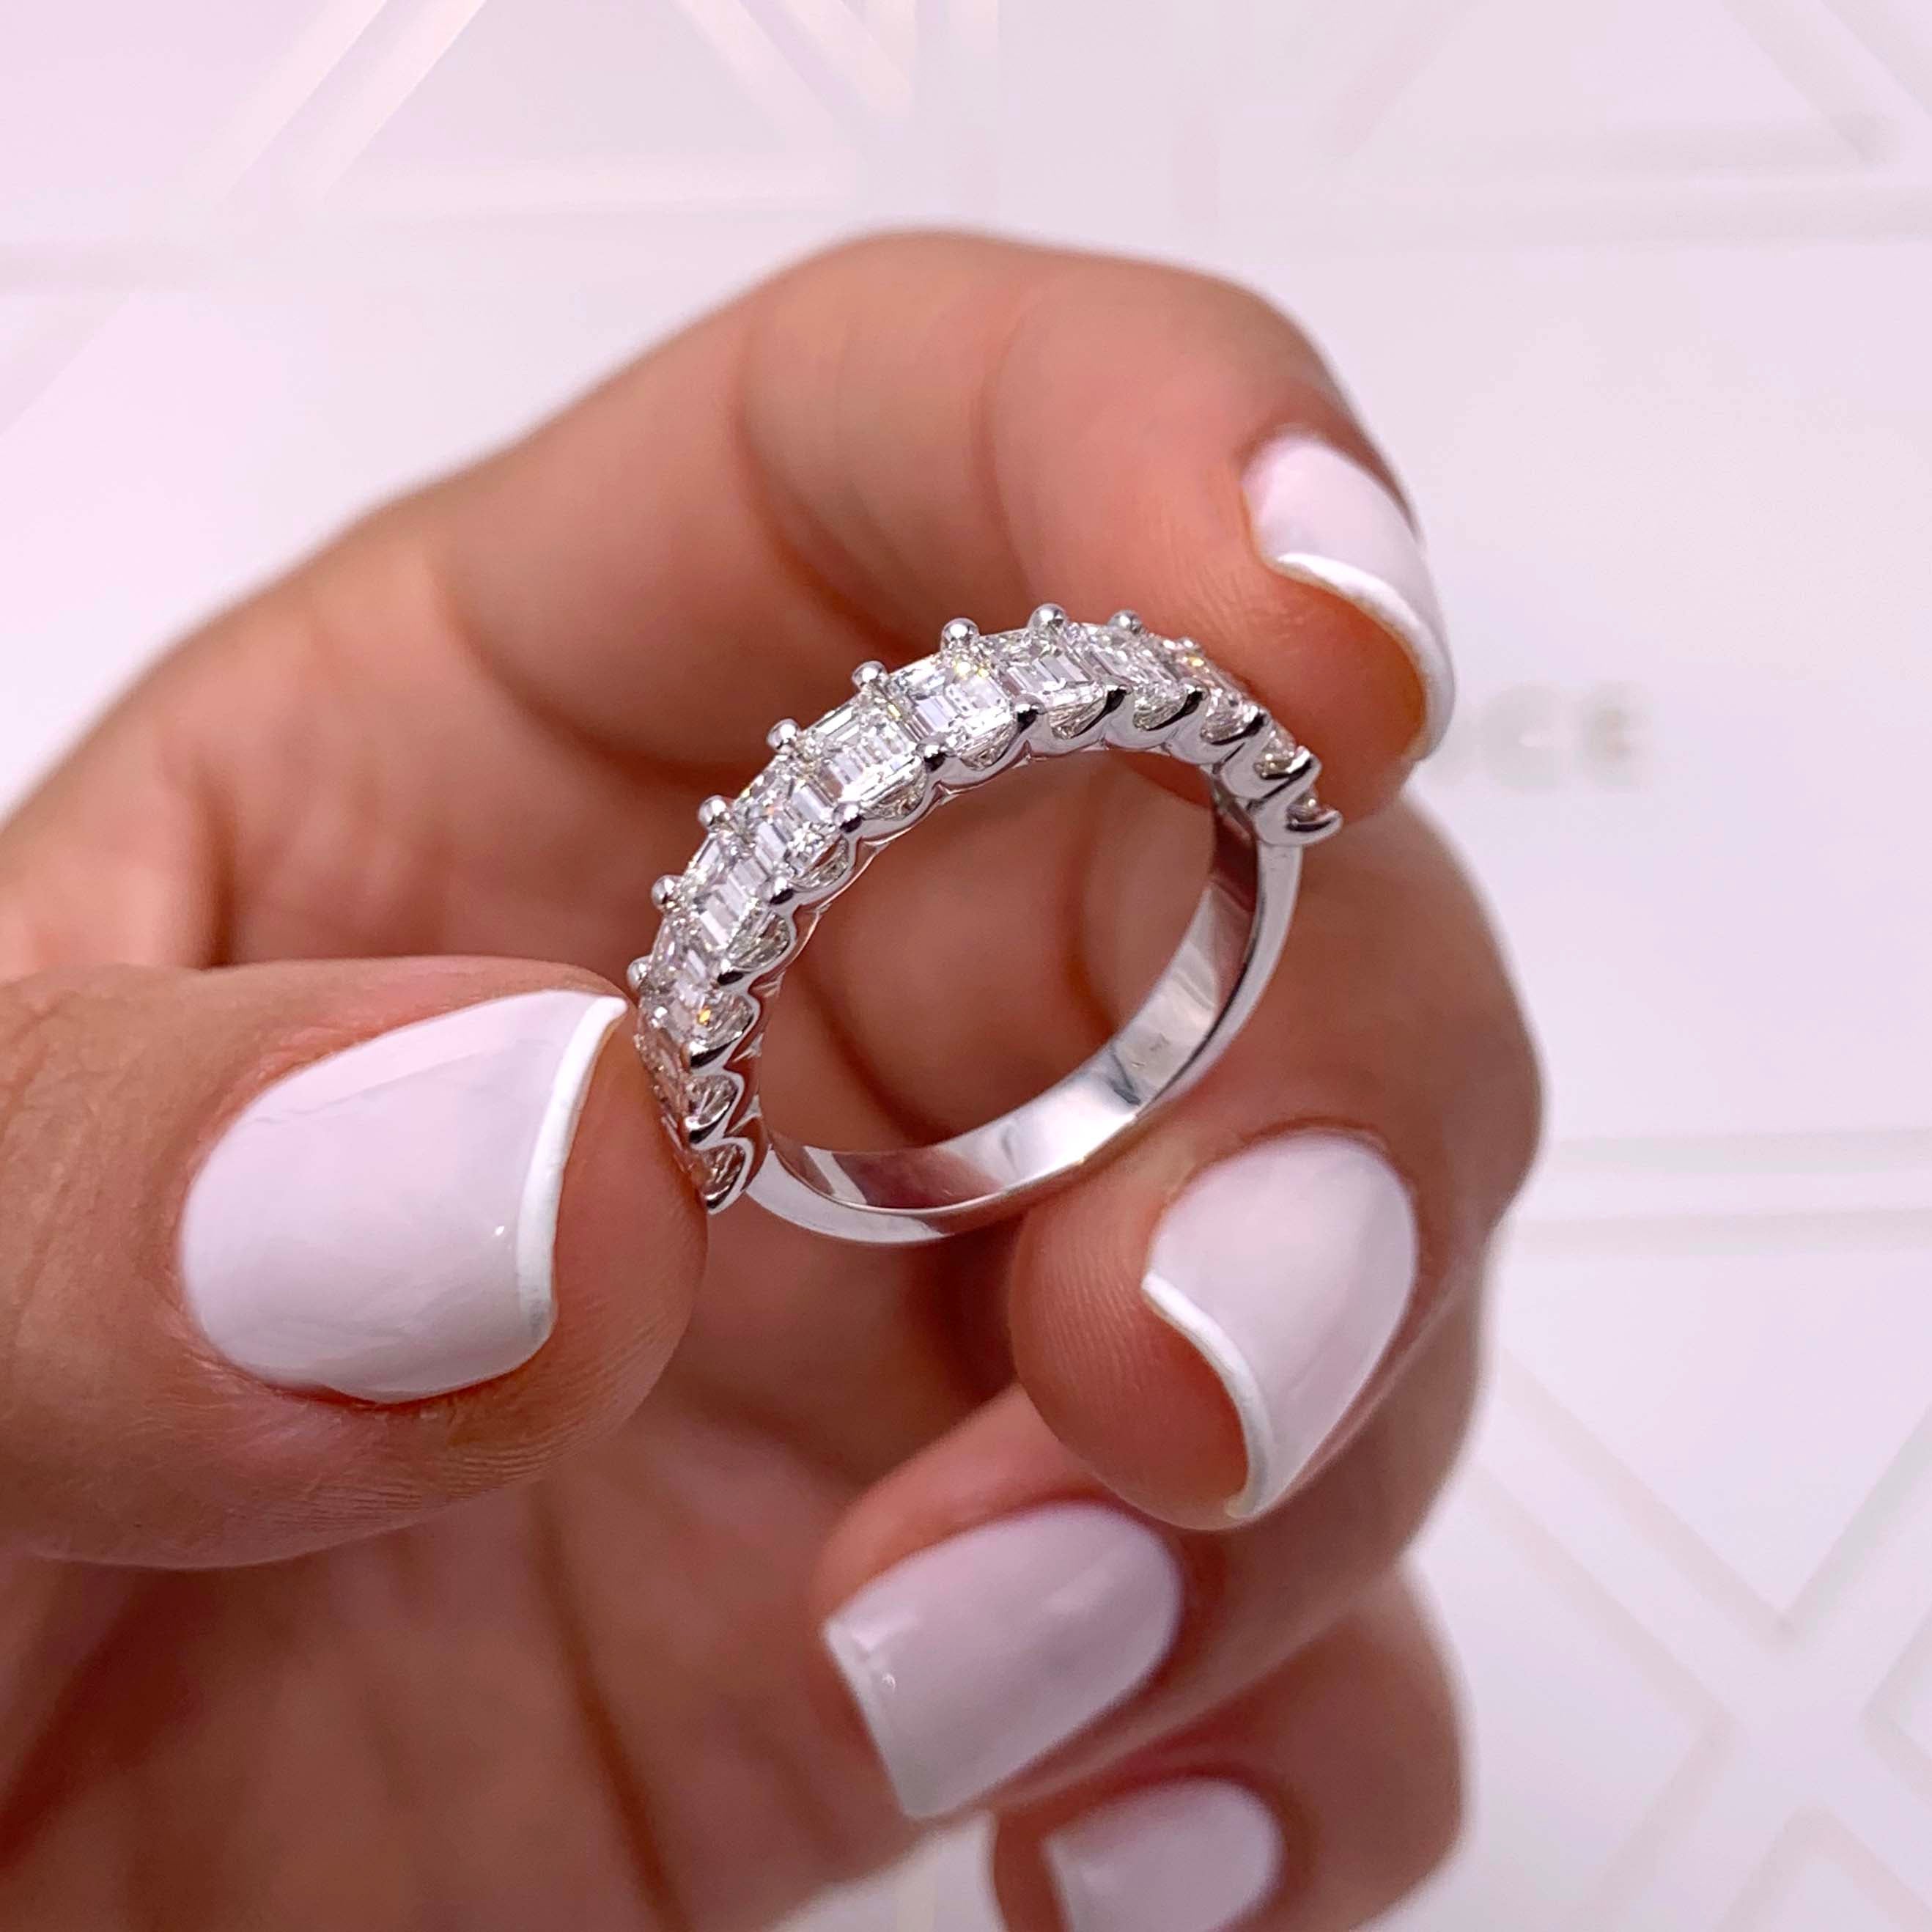 Gina Half Eternity Wedding Ring -14K White Gold